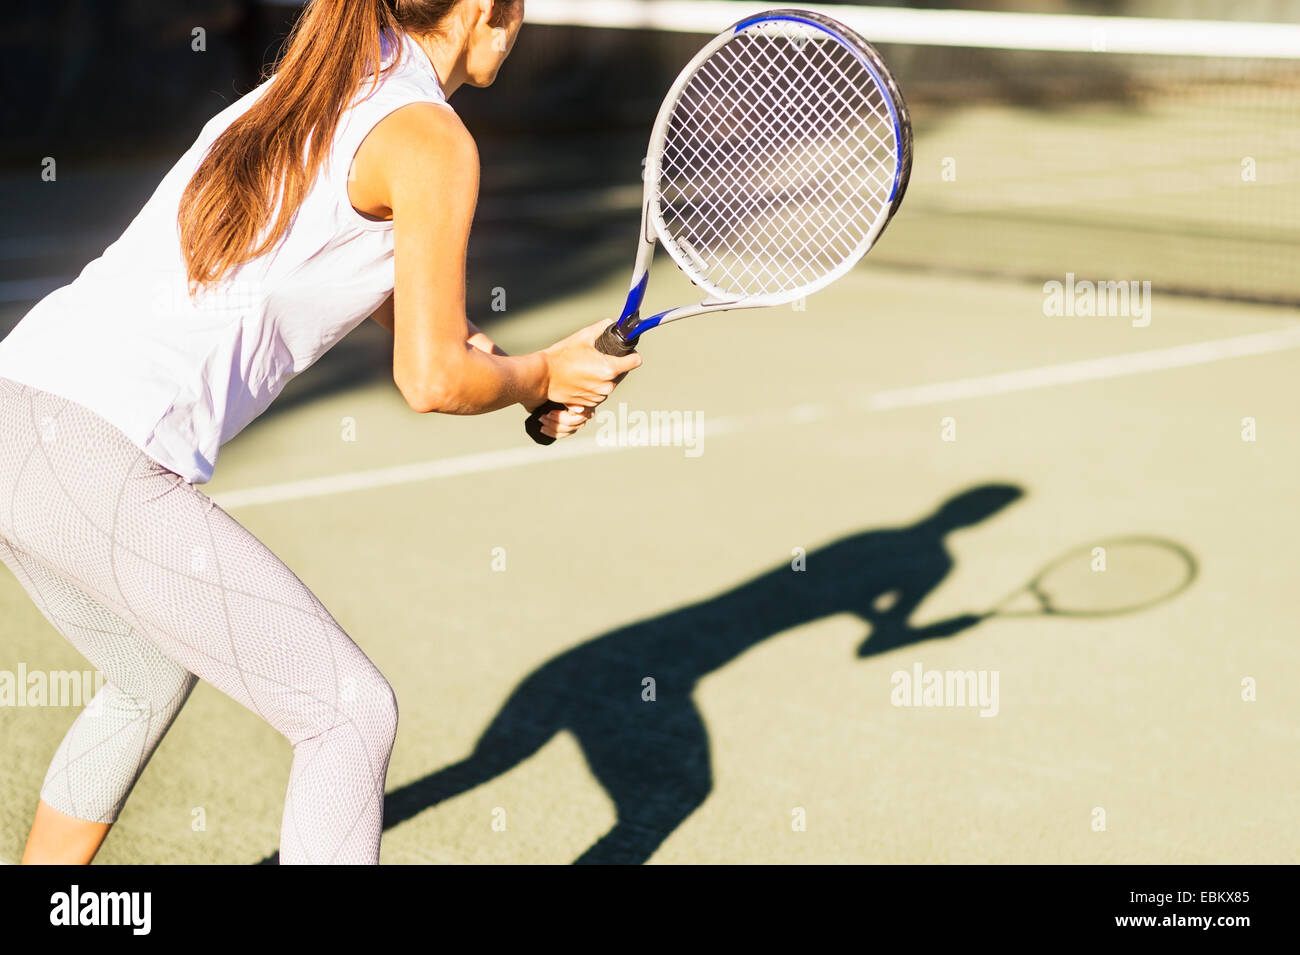 La section haute-shot of young woman playing tennis dans la cour en plein air Banque D'Images